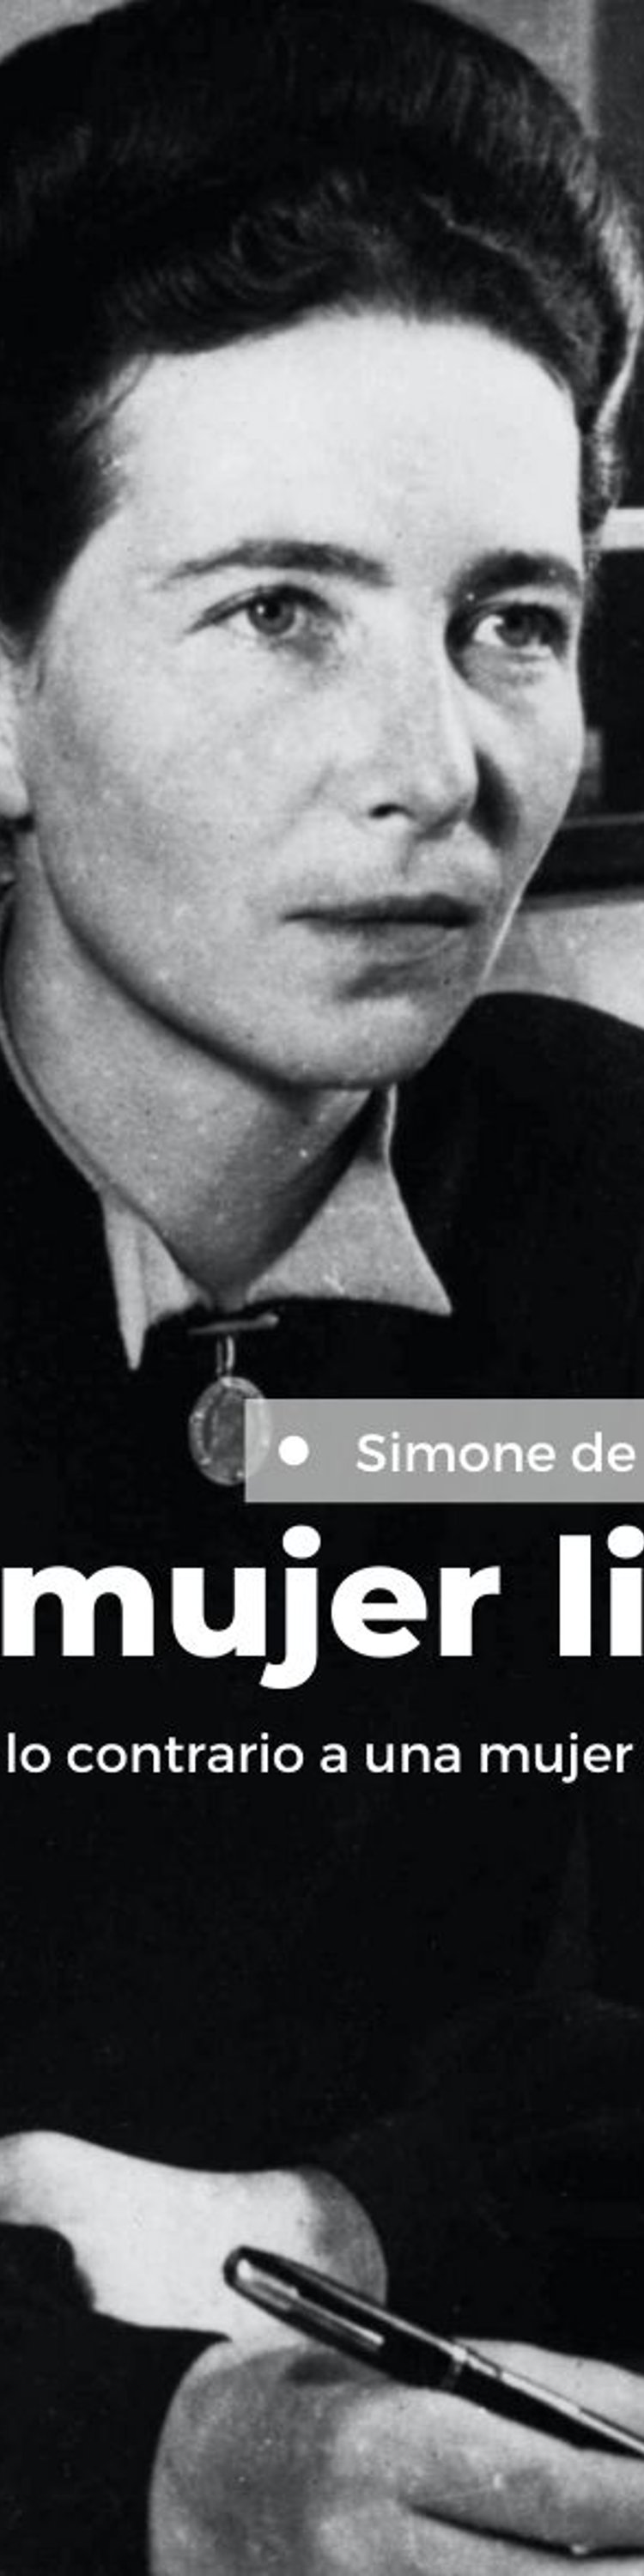 Imágen destacada - Libros recomendados de Simone de Beauvoir - por dónde empezar a leerla